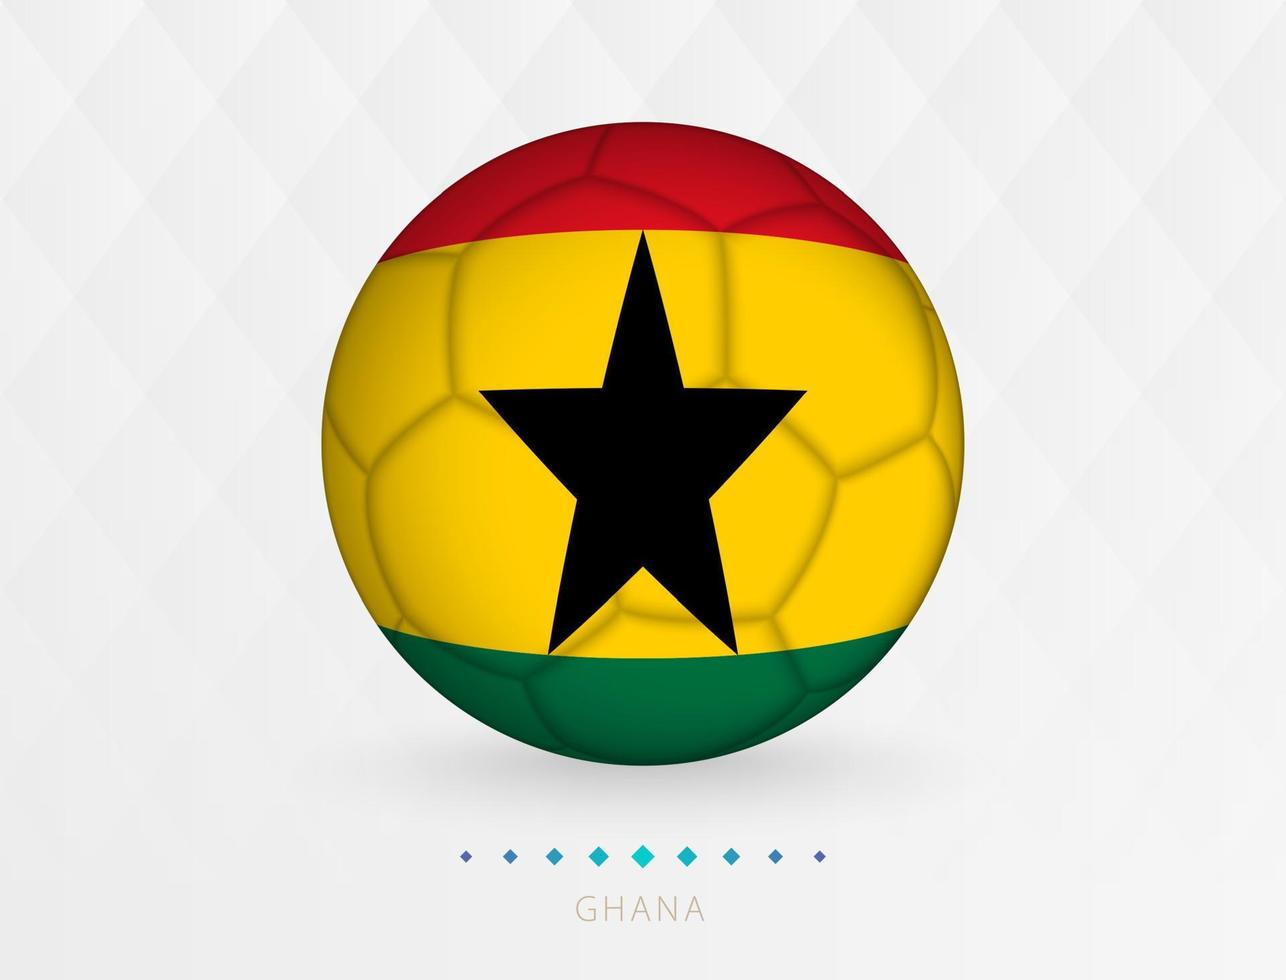 Football ball with Ghana flag pattern, soccer ball with flag of Ghana national team. vector